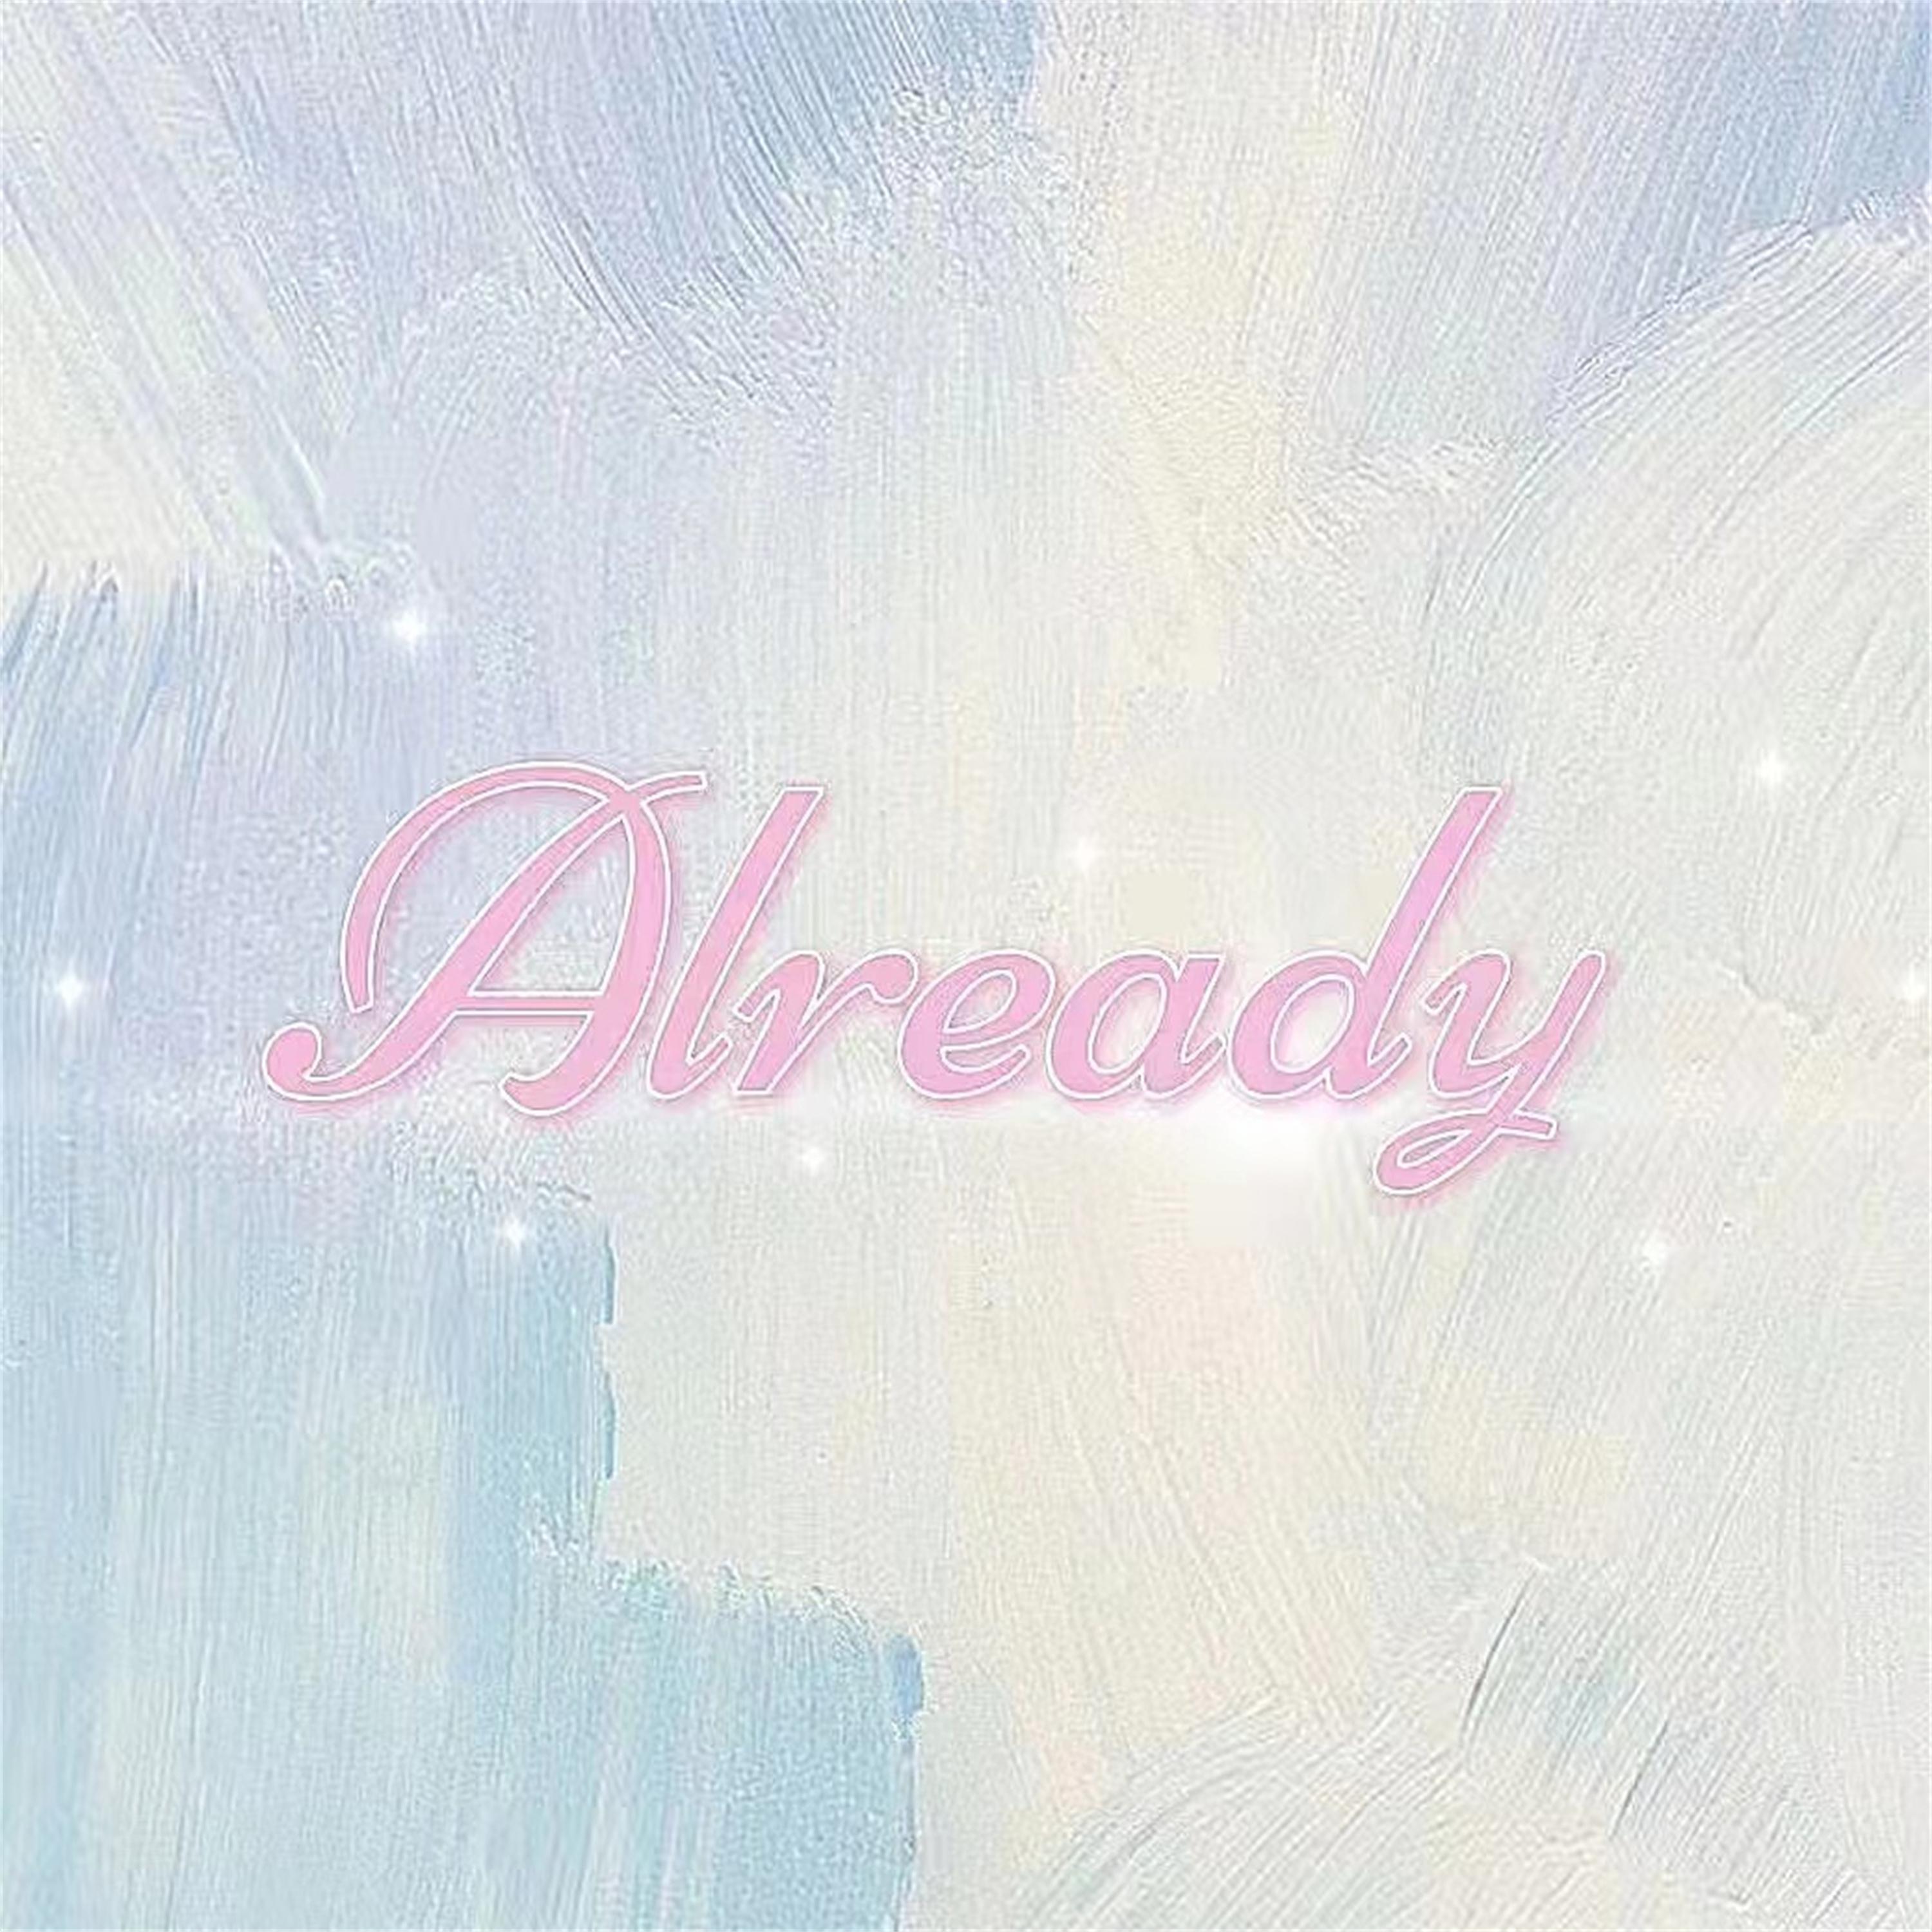 Chency - Already (RyosU Remix)